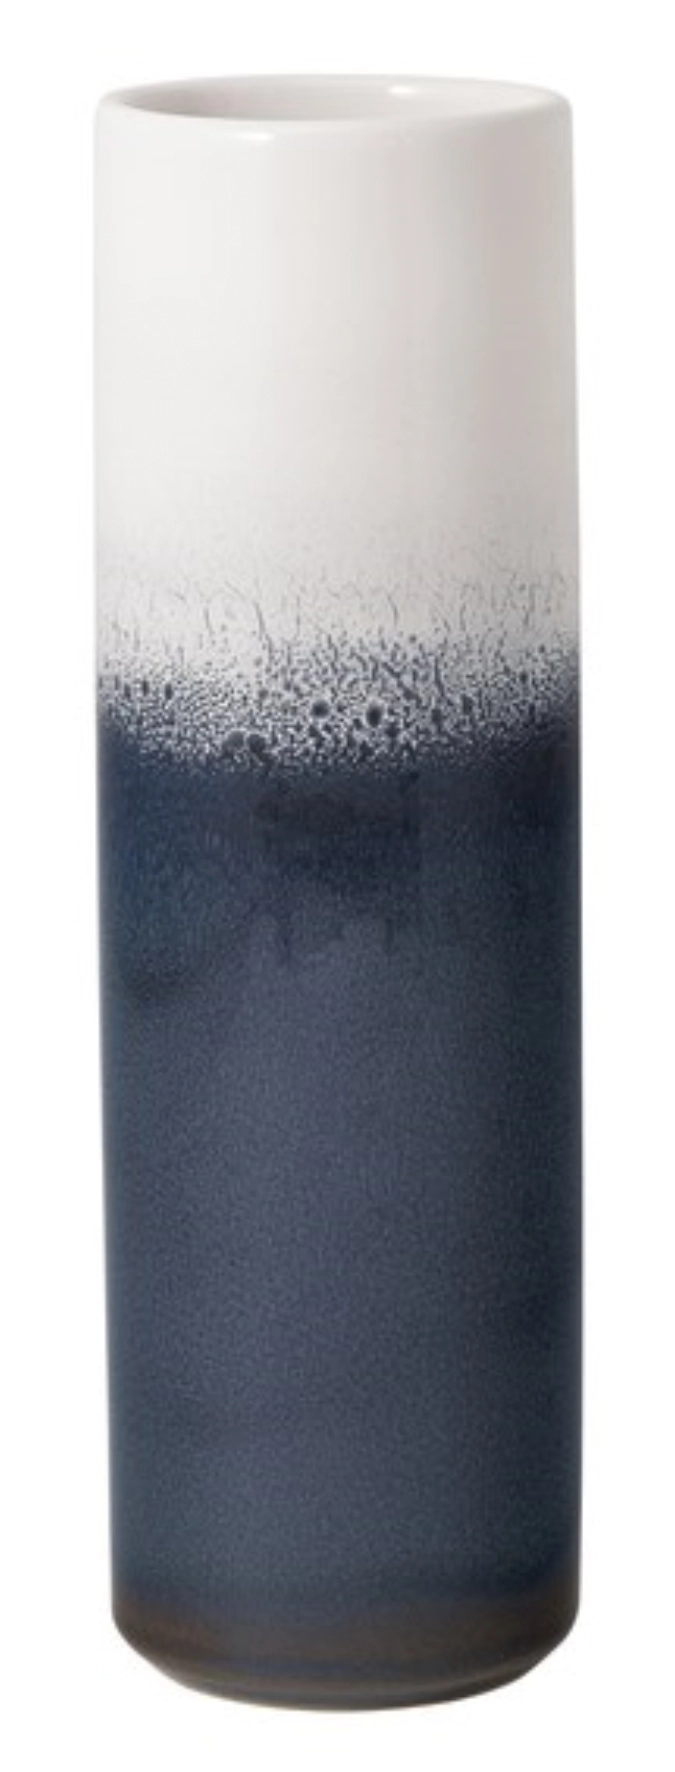 Lave Home Vase Cylinder bleu gross 7.6x7.6x25cm 0.79lt